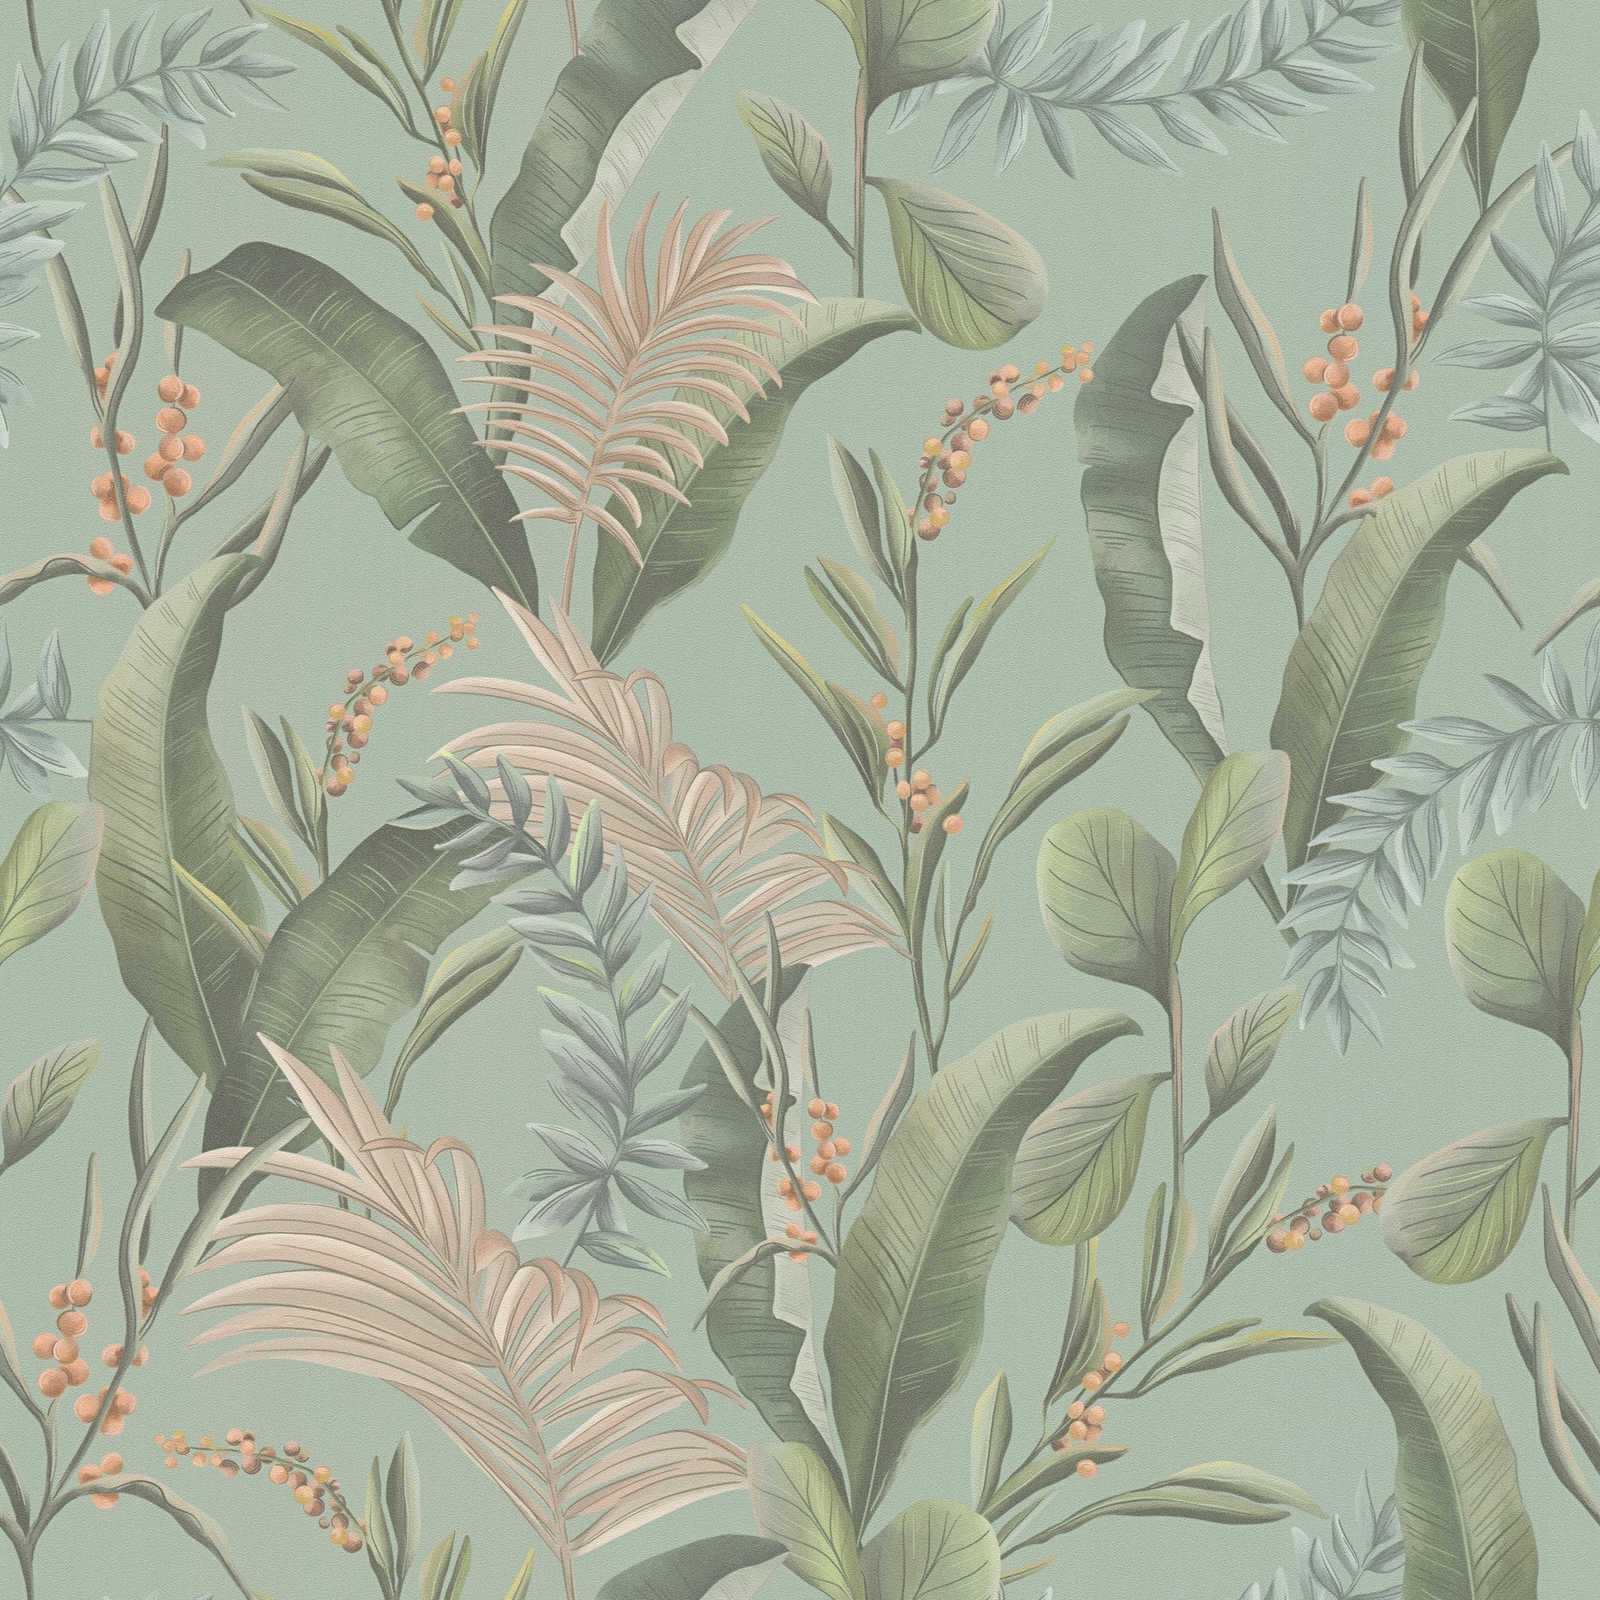         papier peint en papier jungle style floral avec feuilles structuré mat - bleu, vert, beige
    